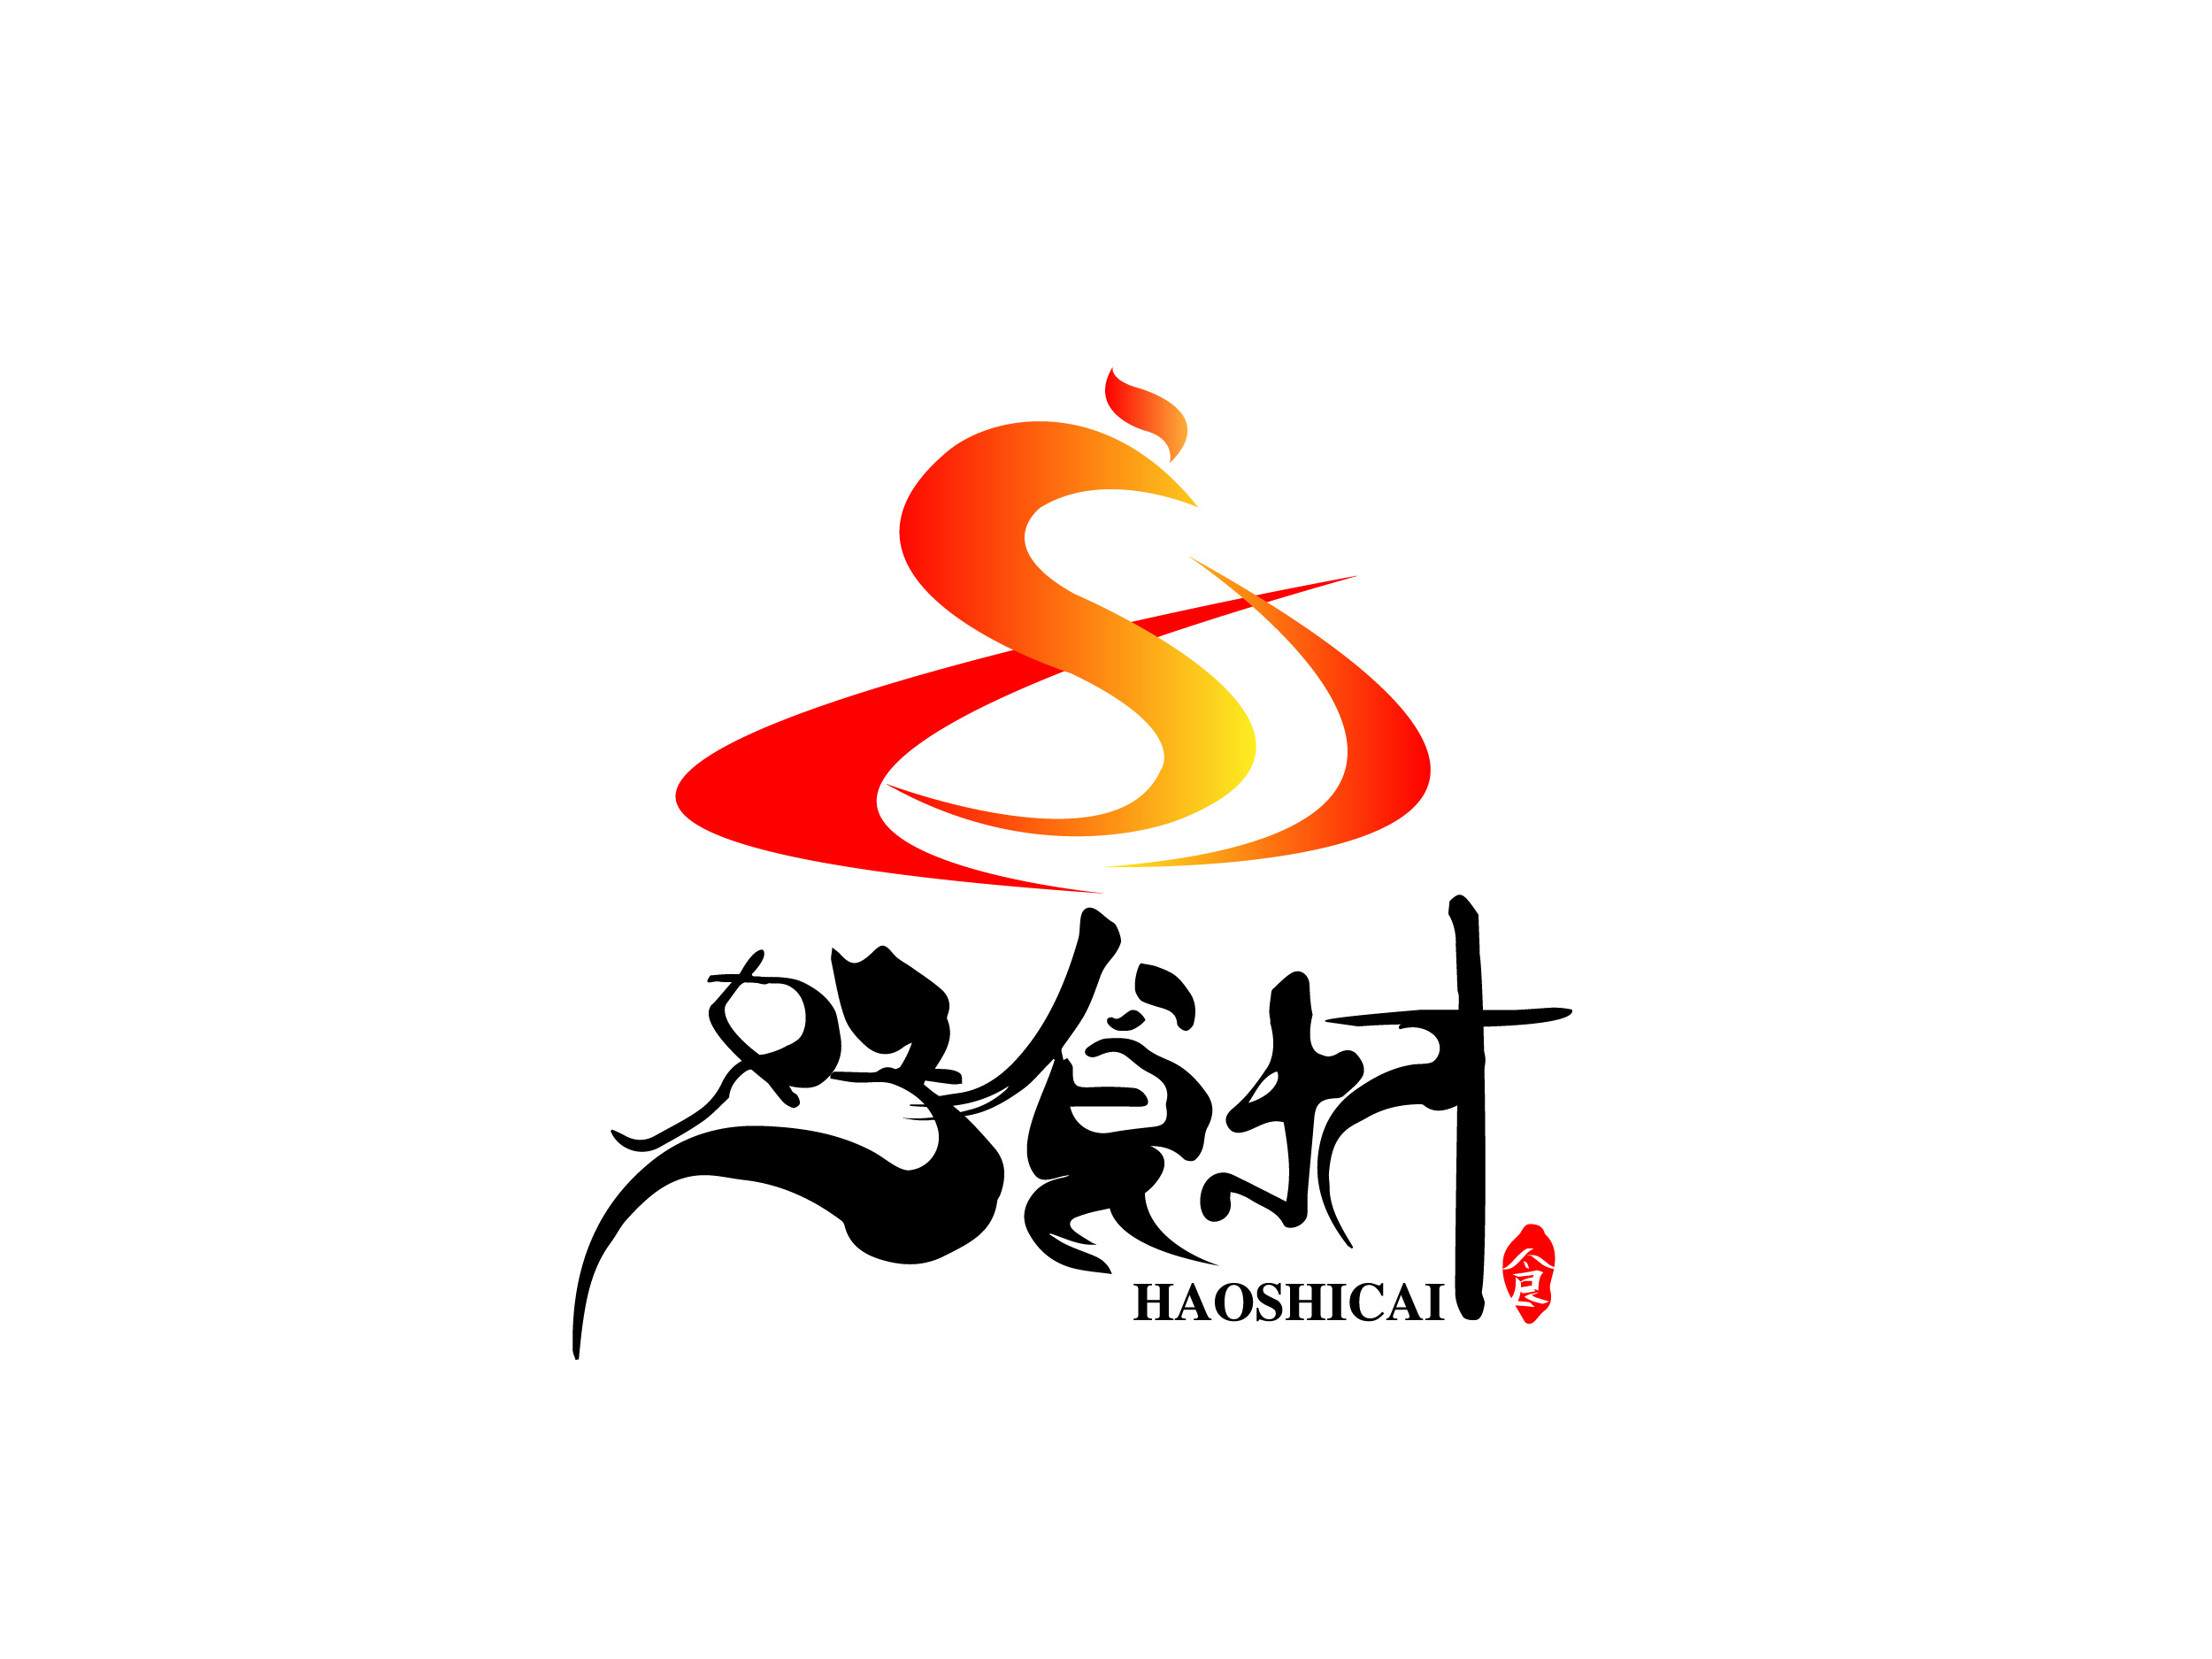 2021年3月logo合集(上)